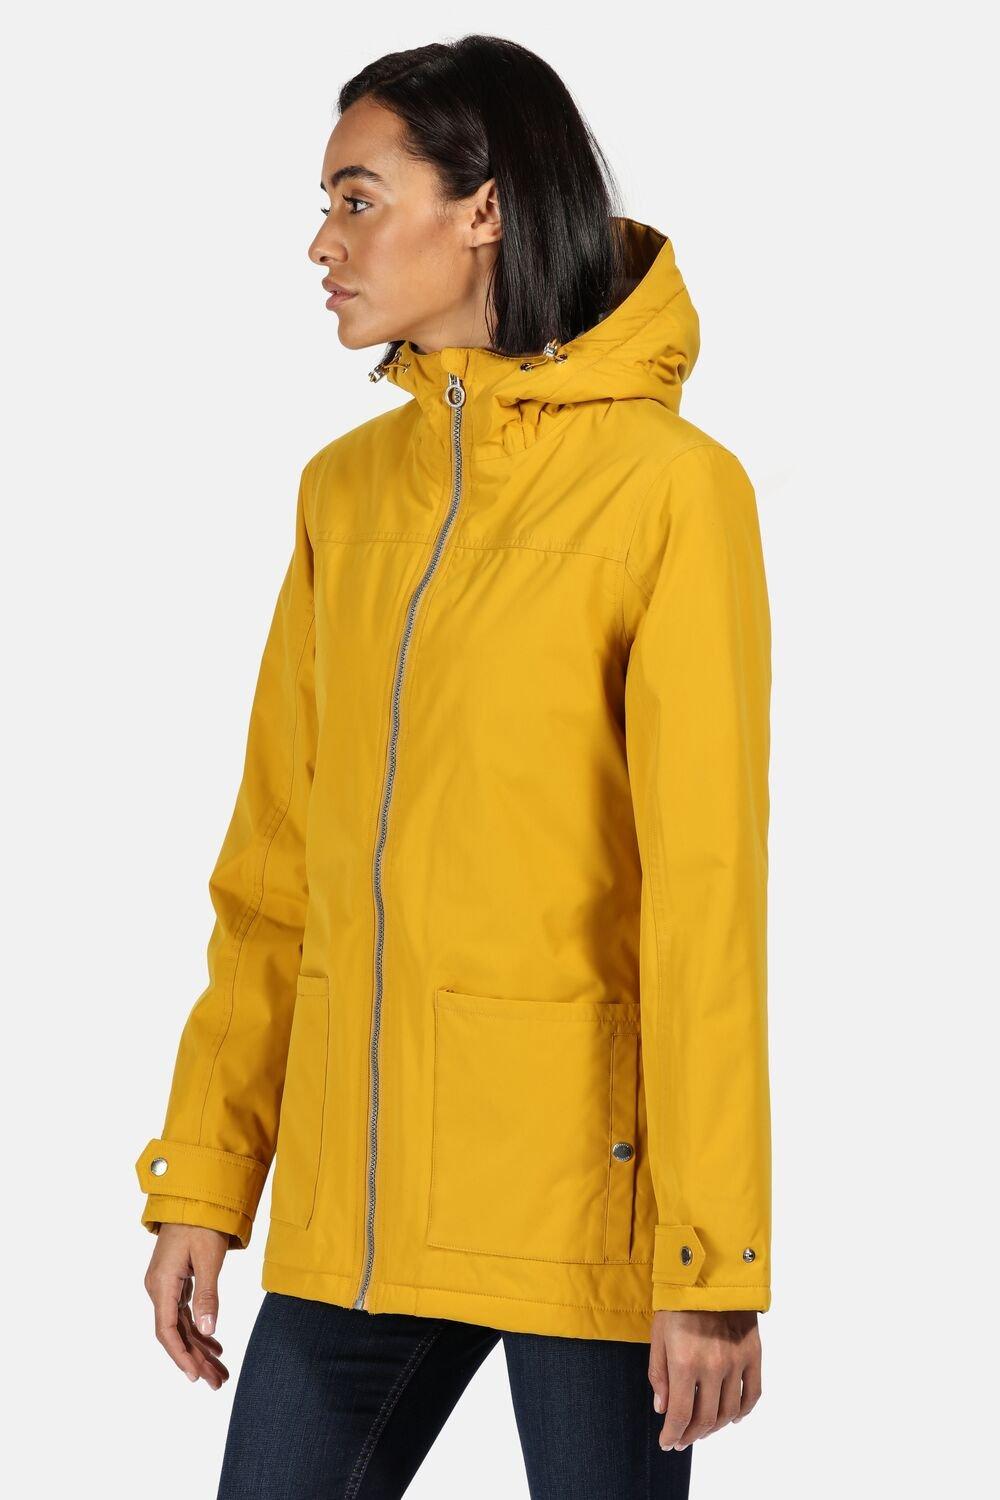 Бергония II Regatta, желтый меховая куртка меховая лоскутная куртка женская меховая куртка